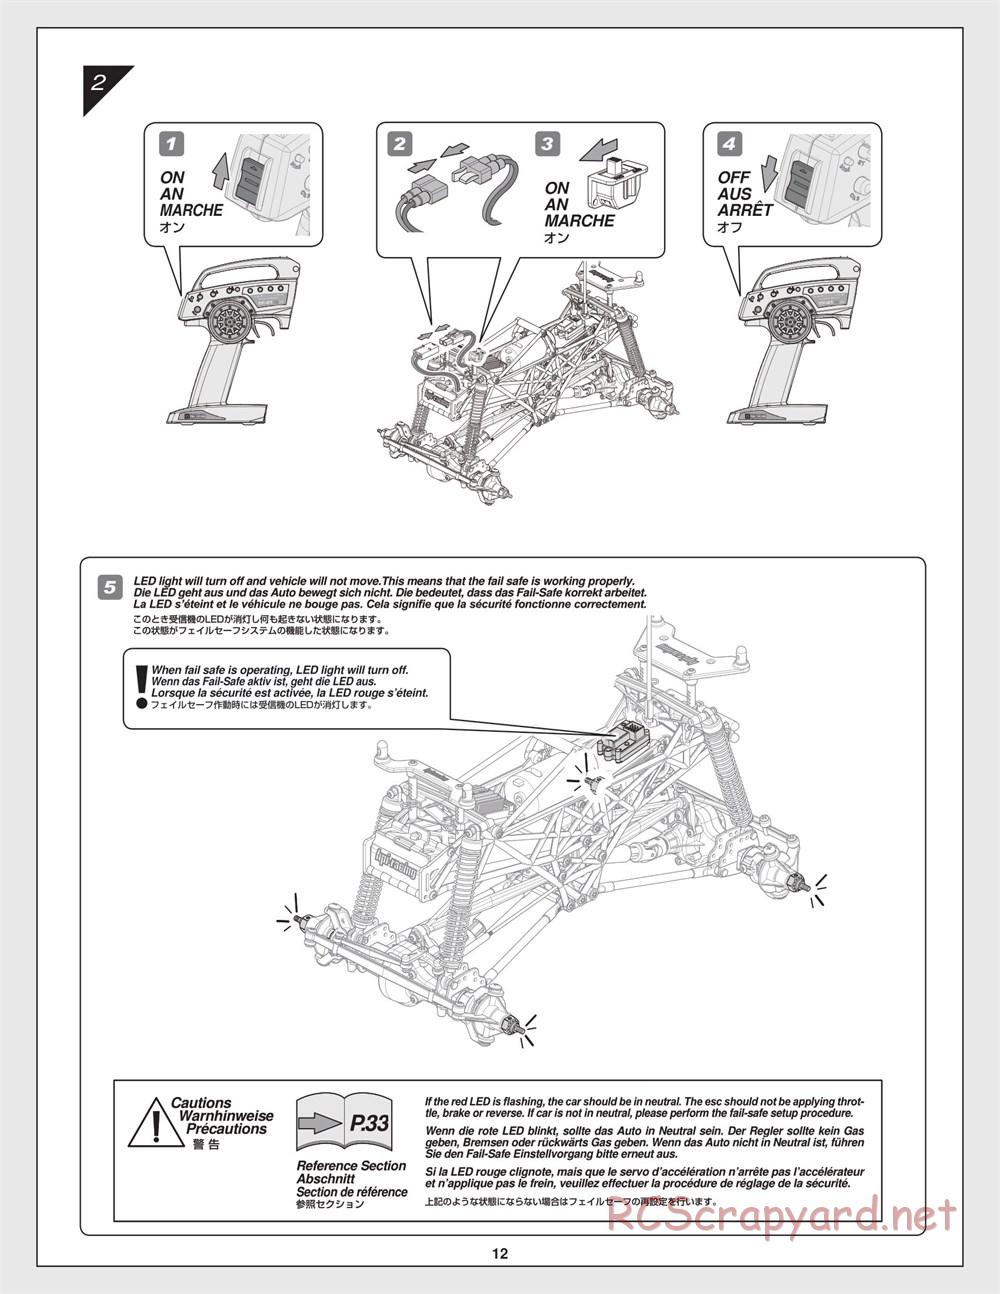 HPI - Crawler King - Manual - Page 12